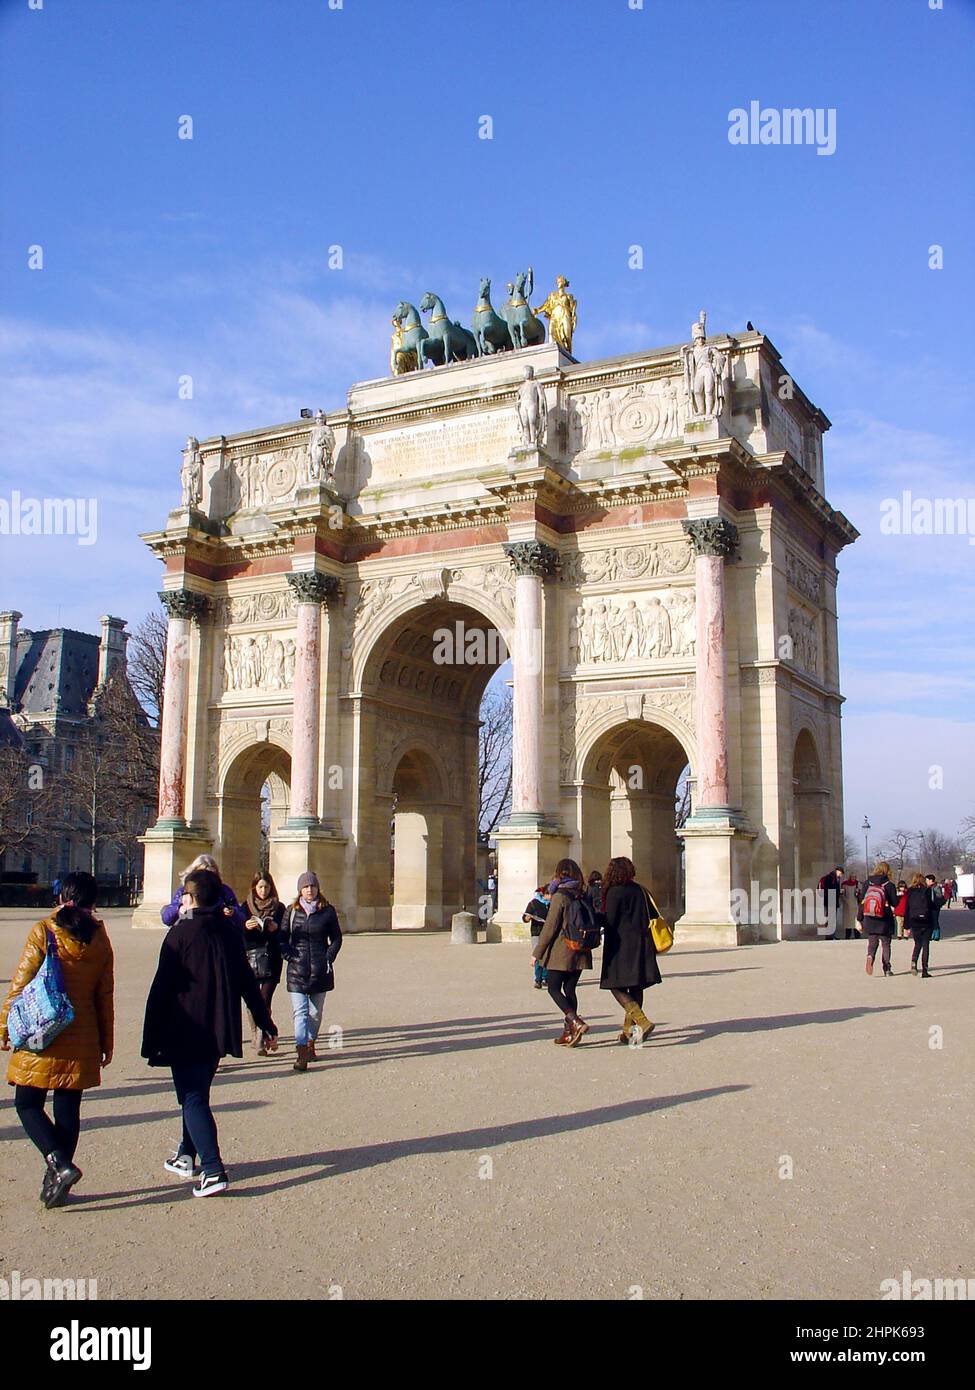 L'Arco di Trionfo del Carrousel. Architettura neoclassica in ordine corinzio fu costruita tra il 1806 e il 1808. Foto Stock